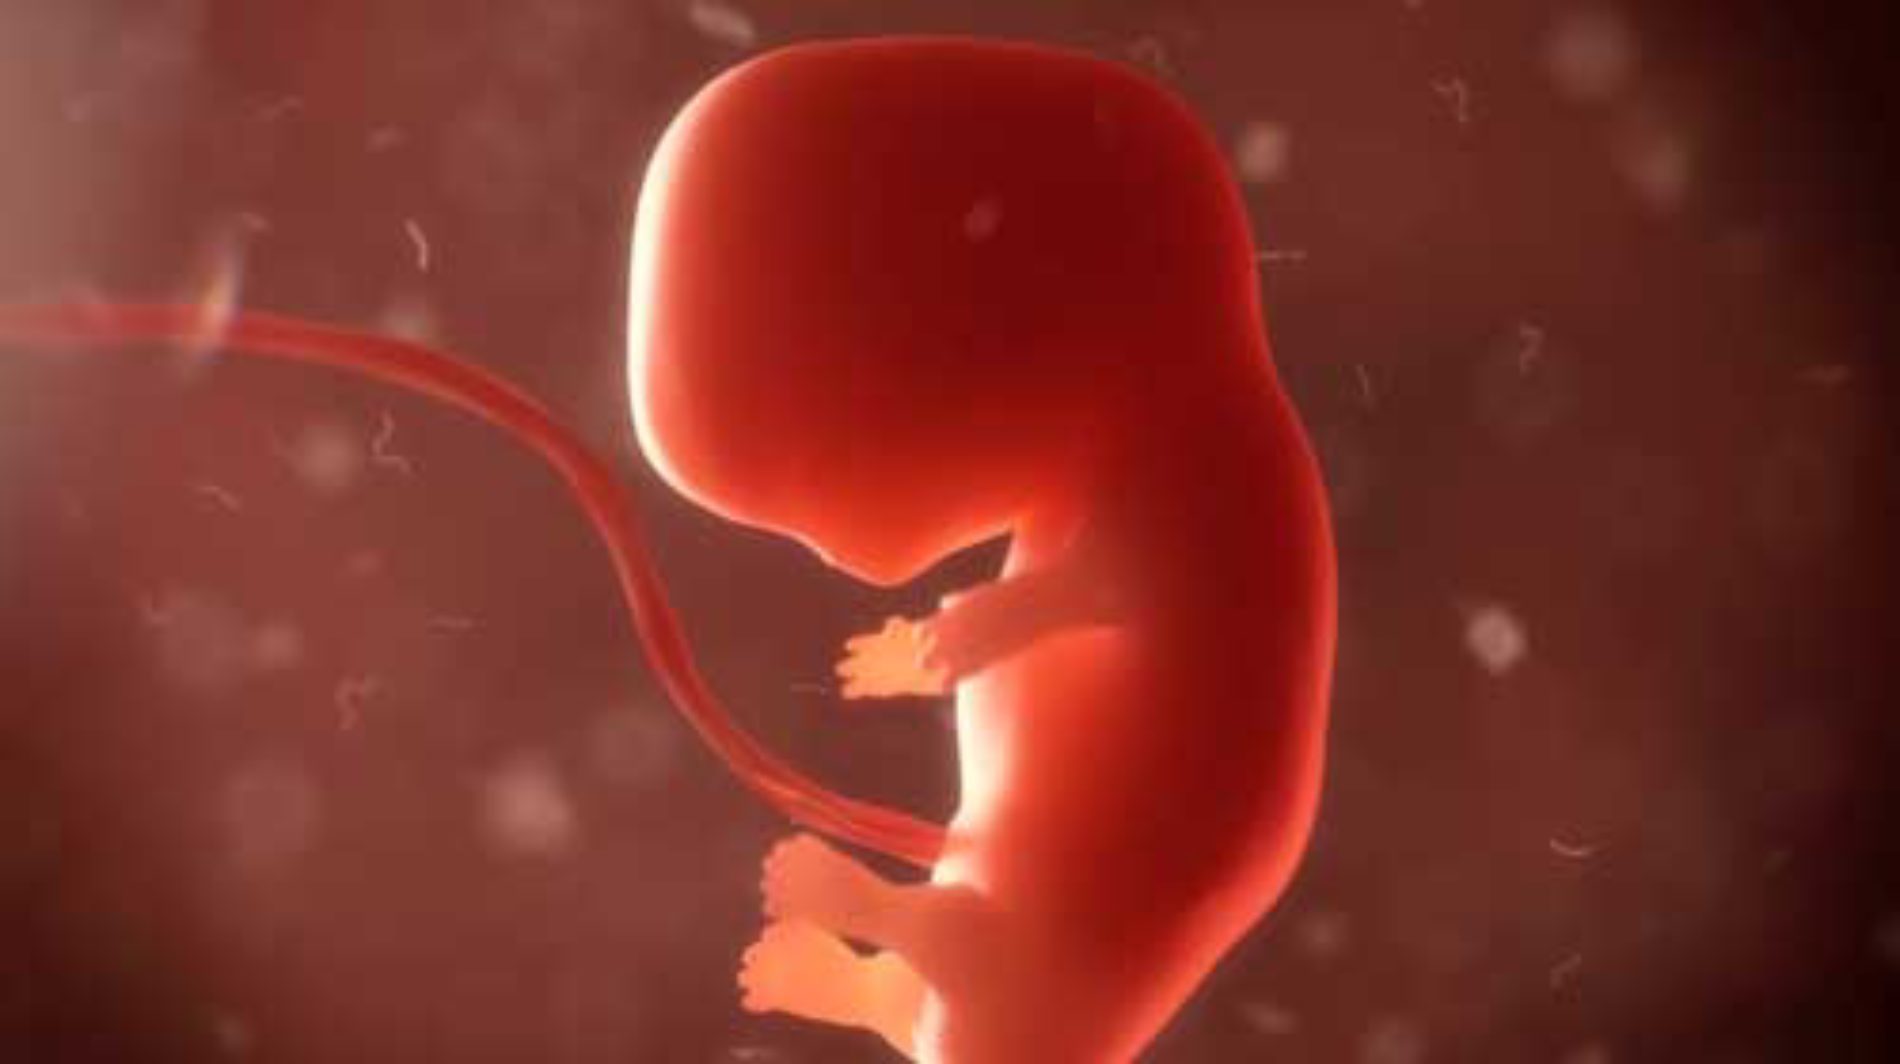 A vida e a personalidade do feto (Aborto)